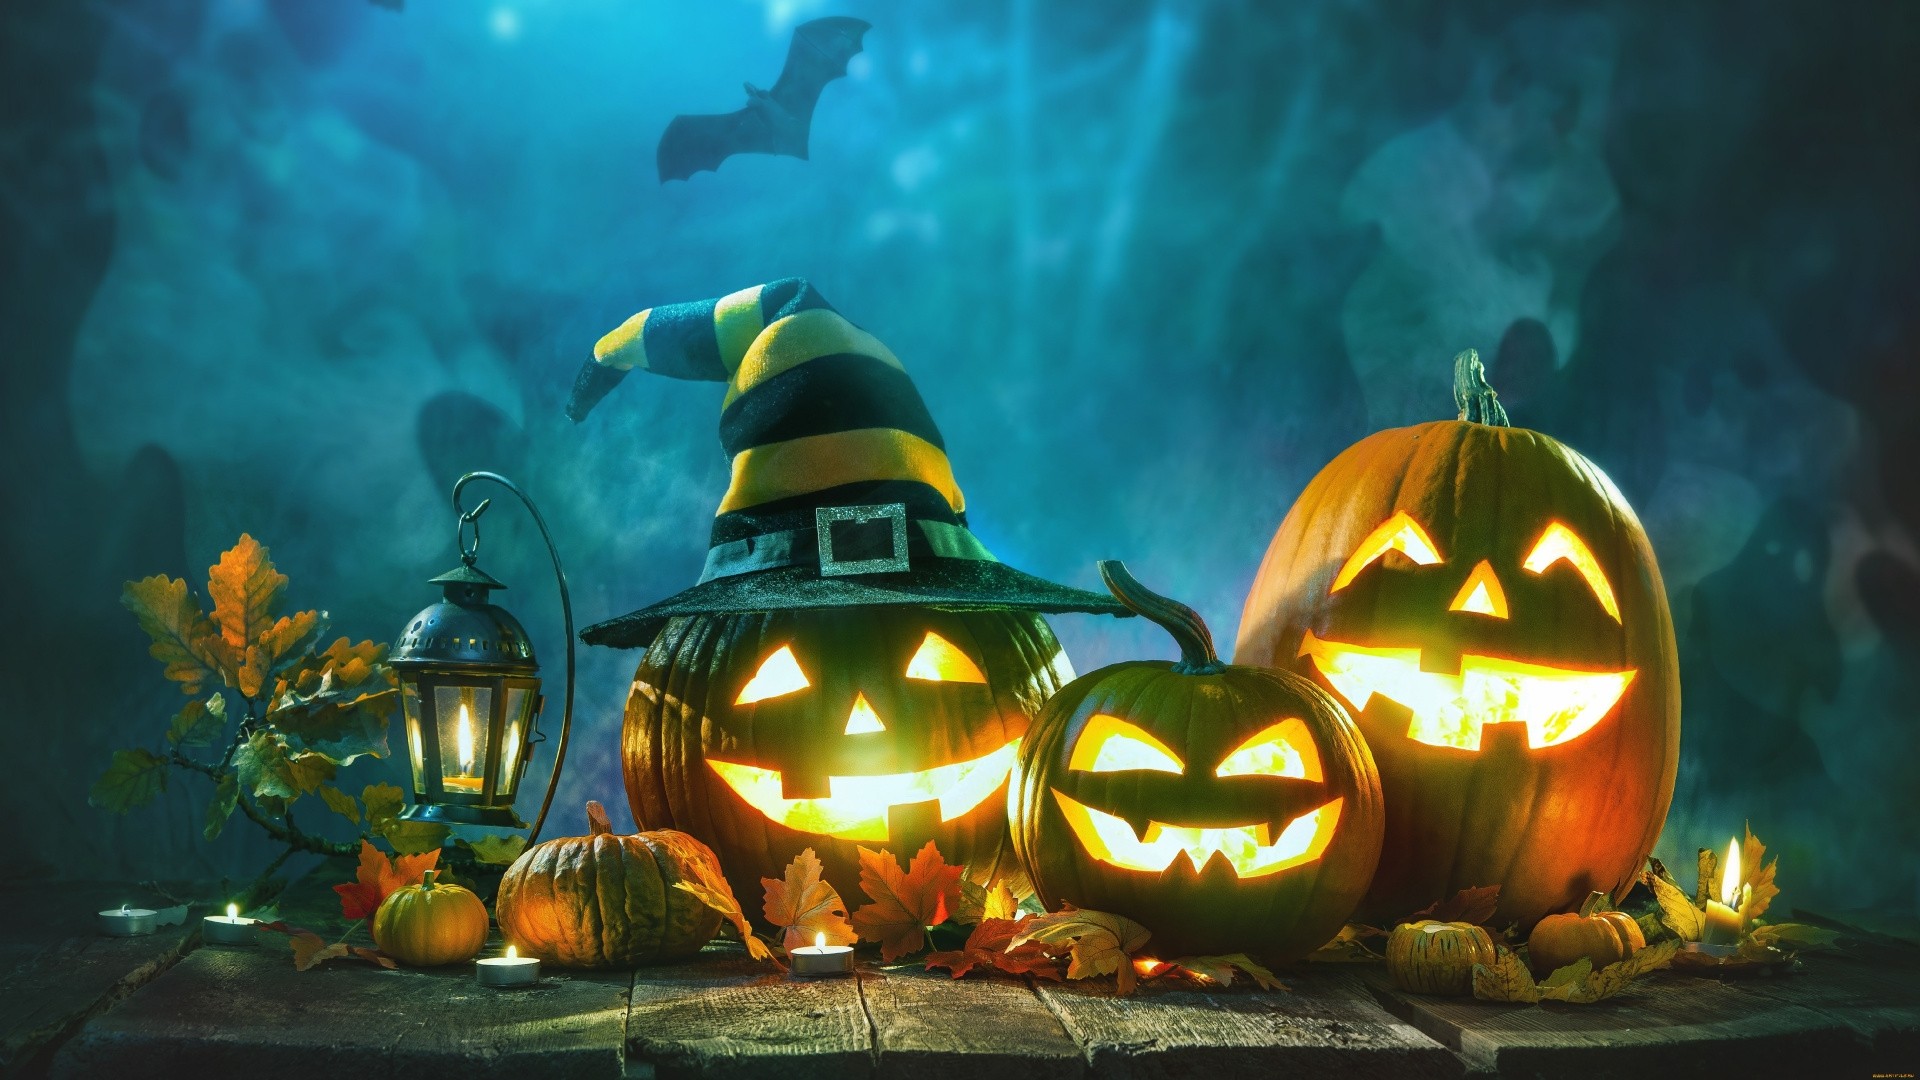 Hình Nền Máy Tính Hoạt Hình Và Bí Ngô Halloween | Nền JPG Tải xuống miễn  phí - Pikbest